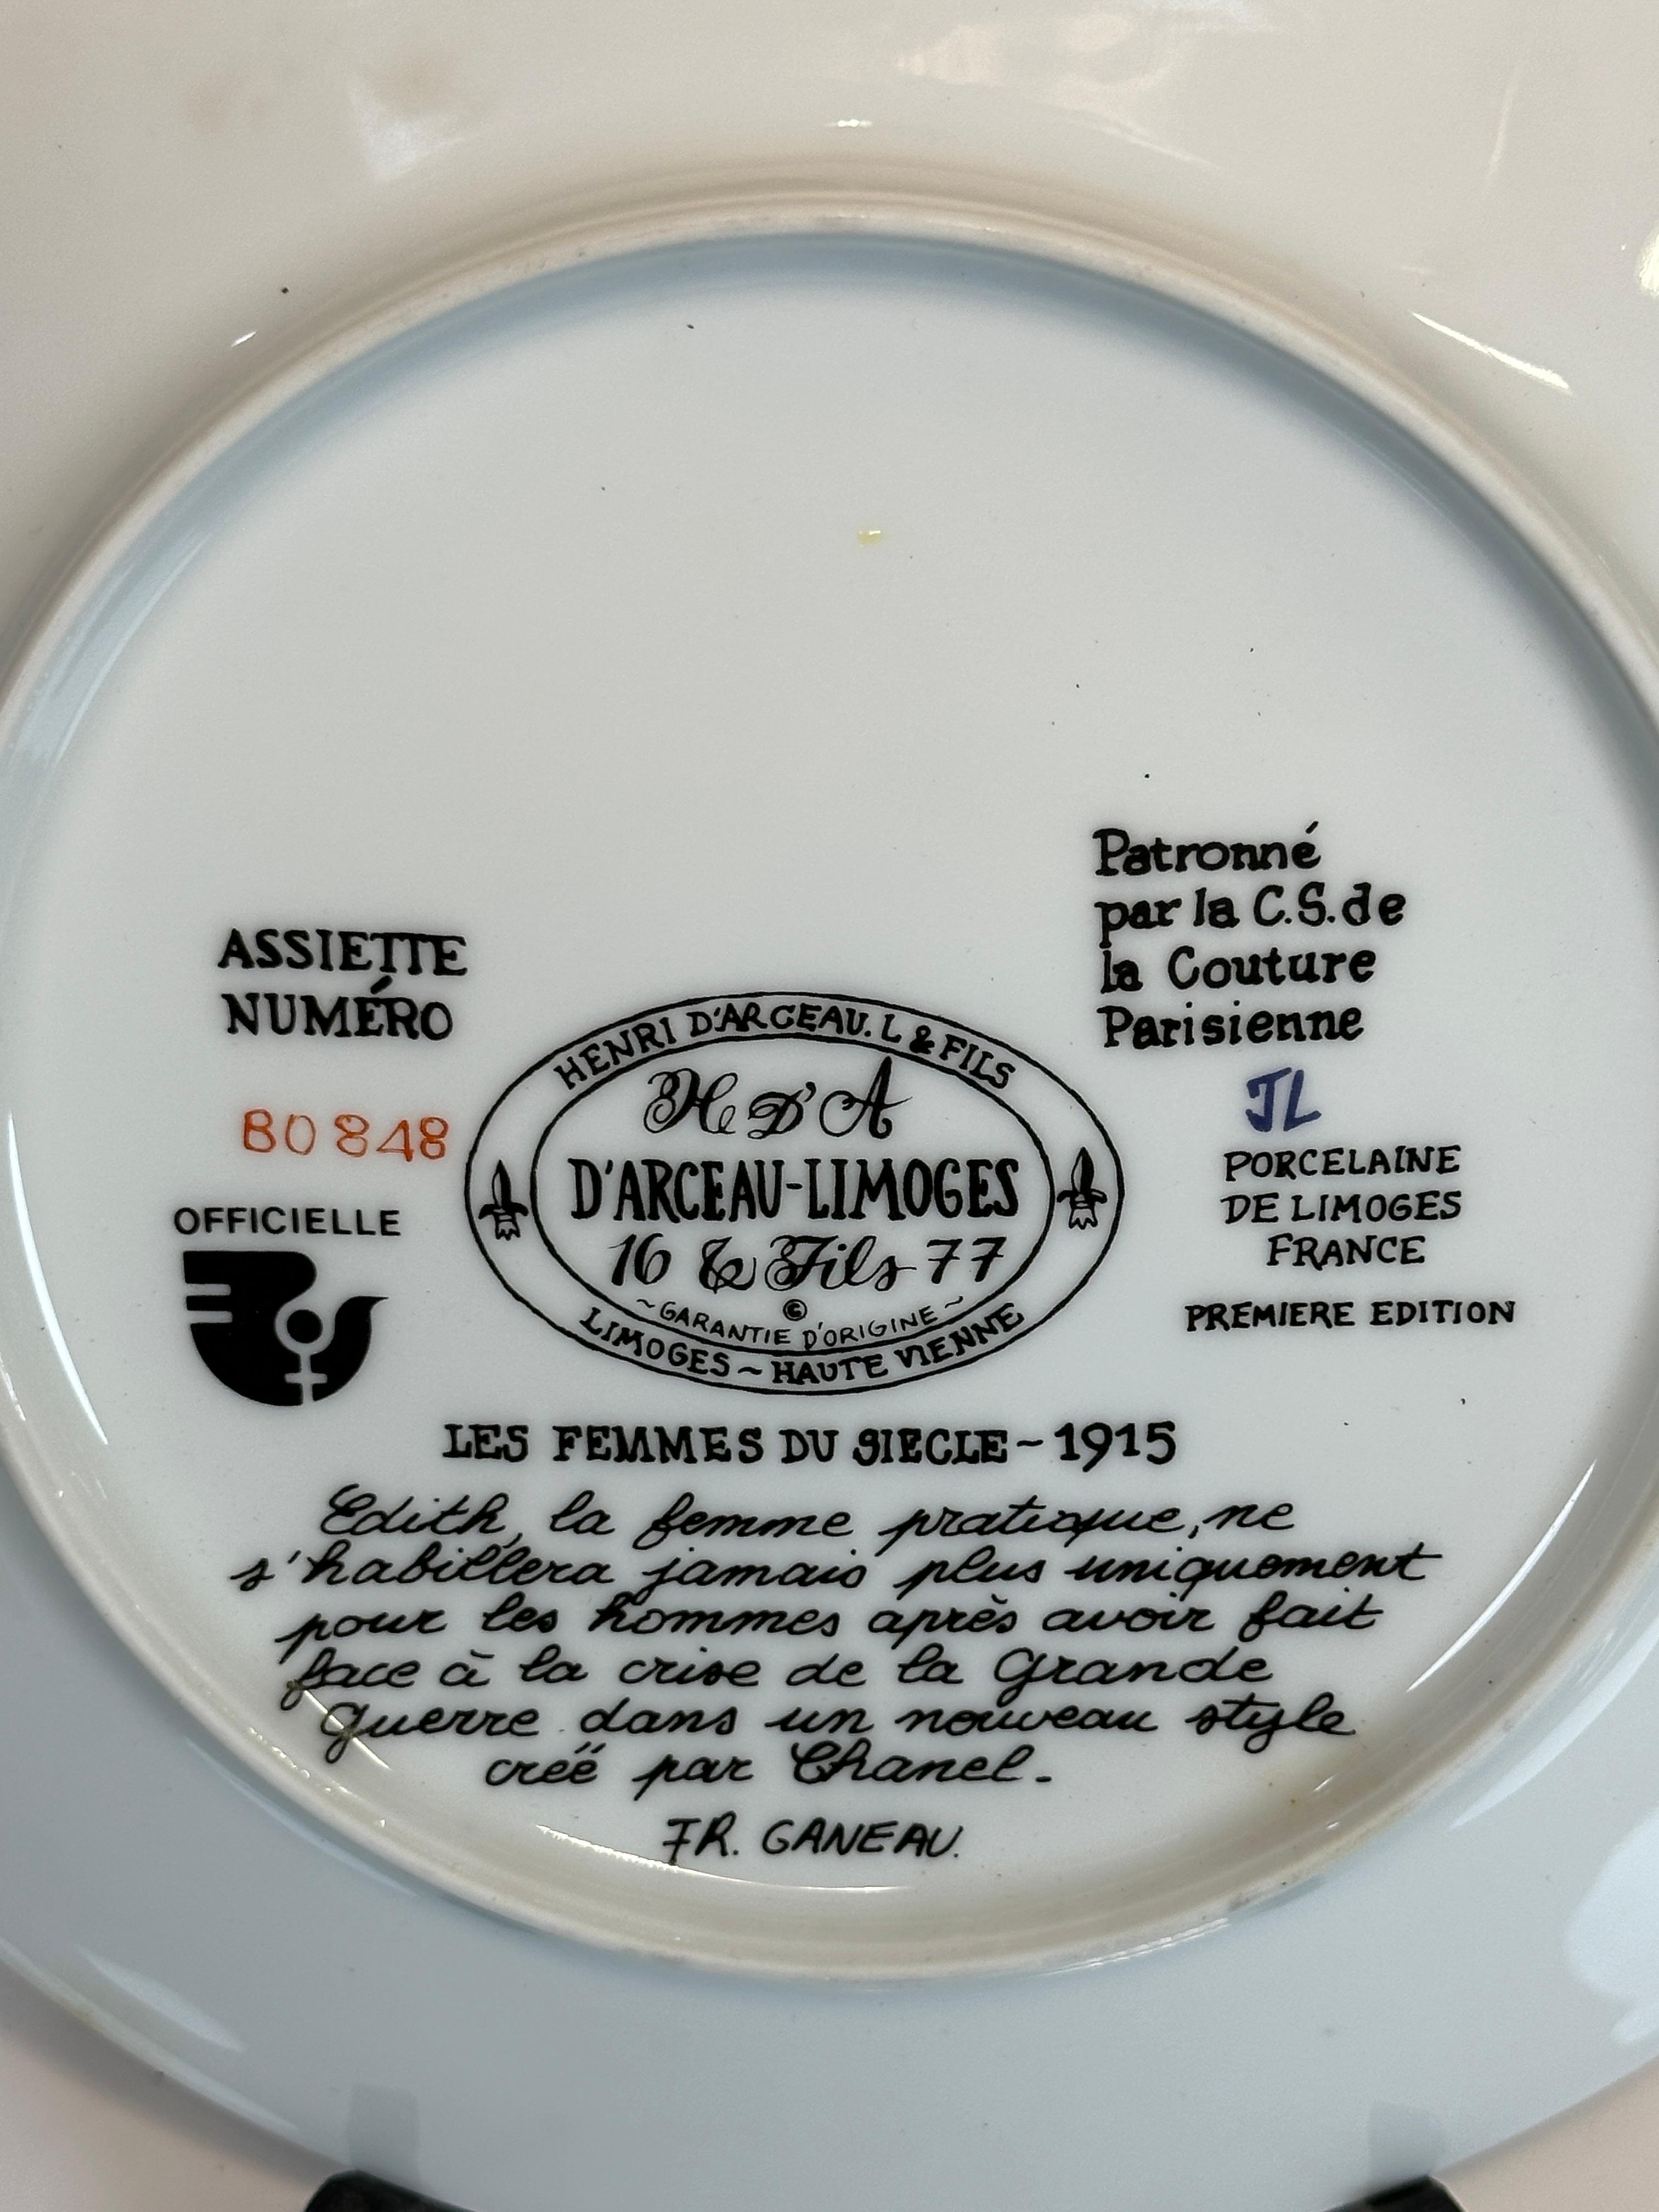 Vintage D'Arceau Limoges Les Femmes French Collectors Plates